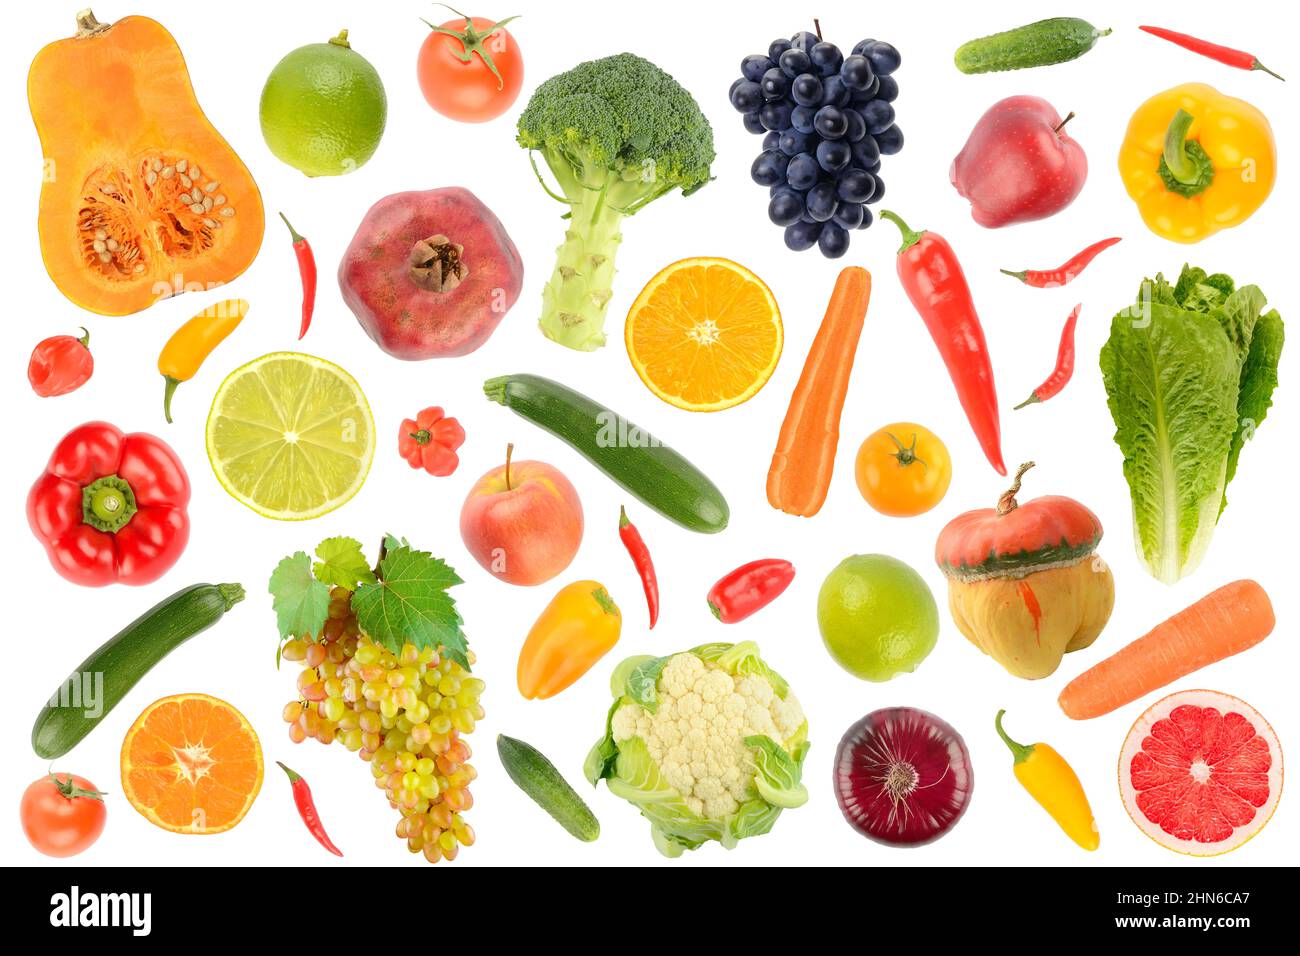 Motif abstrait. Grande collection de fruits et légumes frais isolés sur fond blanc. Banque D'Images